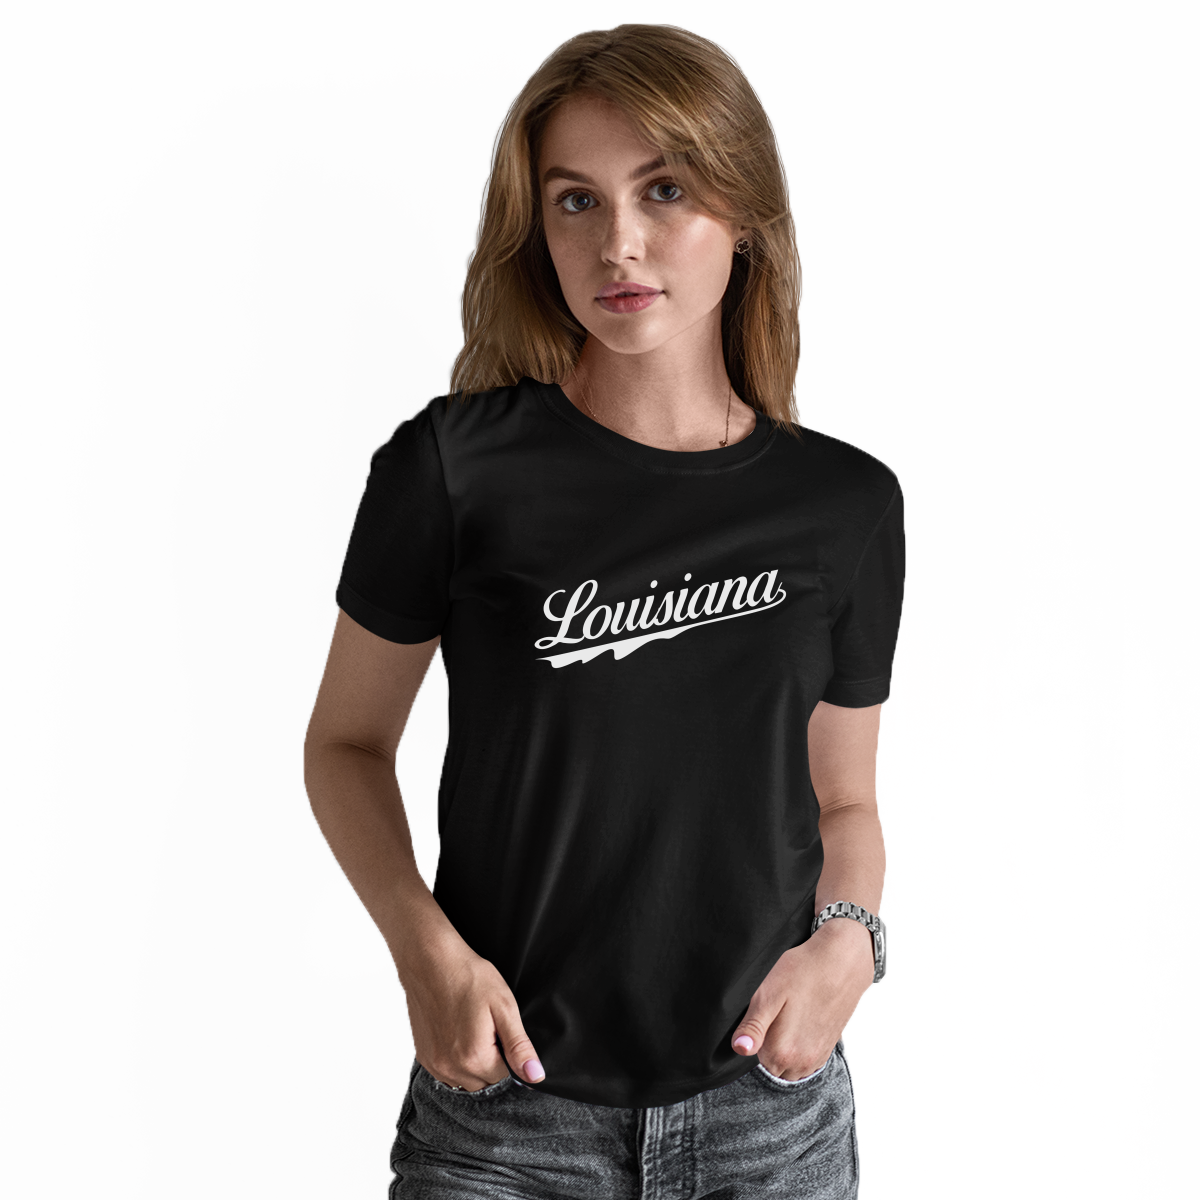 louisiana tee shirts women